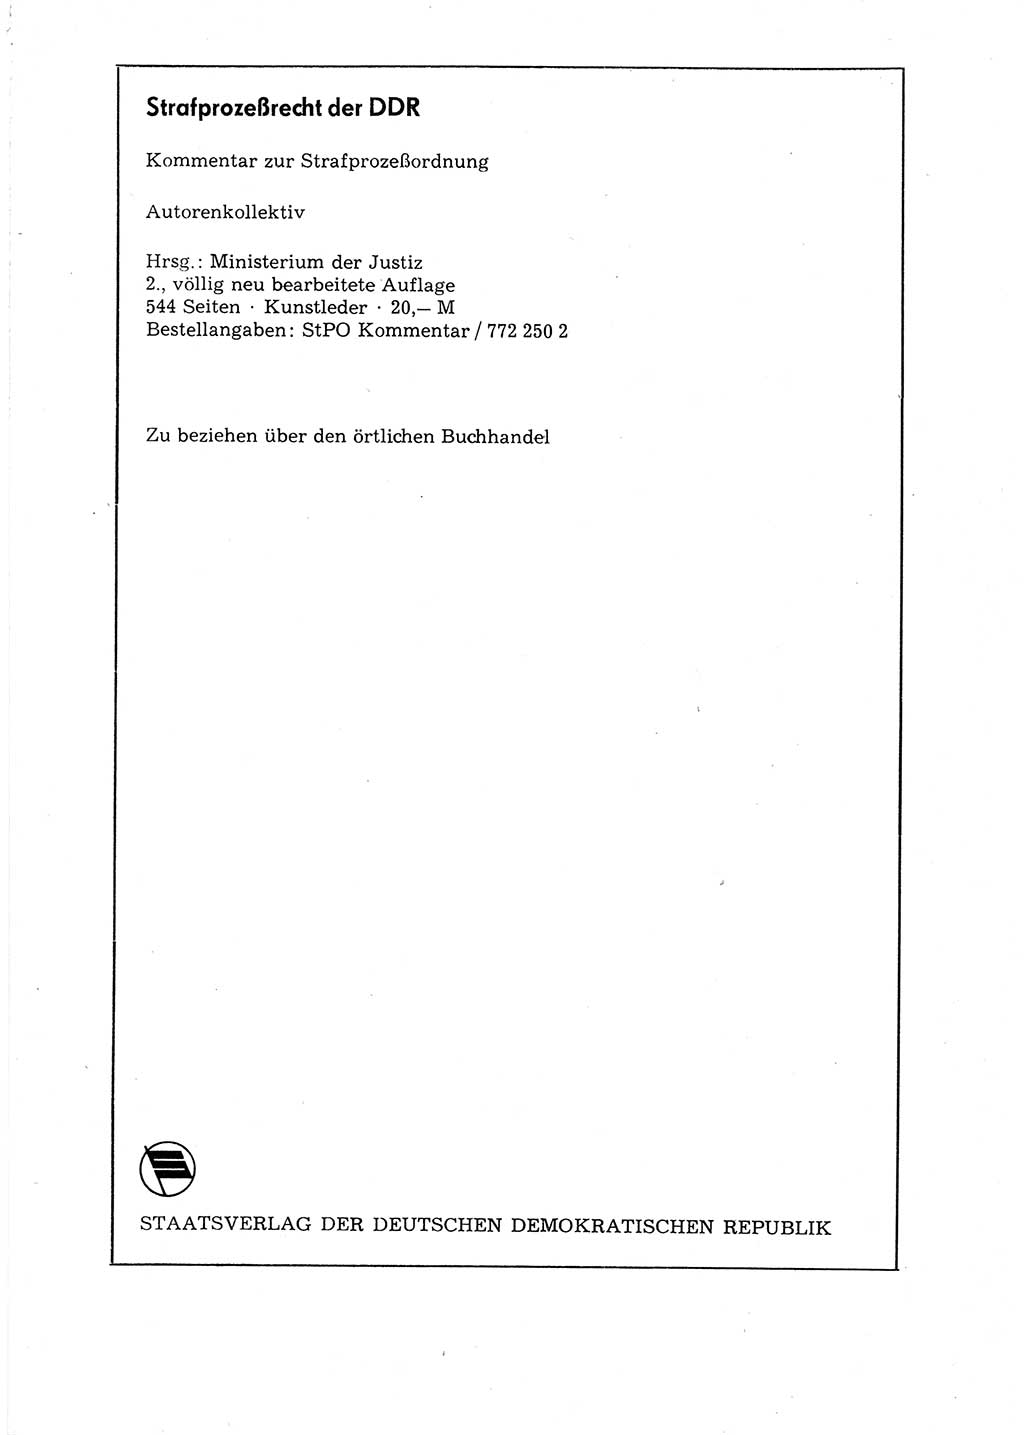 Strafgesetzbuch (StGB) der Deutschen Demokratischen Republik (DDR) 1987, Seite 109 (StGB DDR 1987, S. 109)